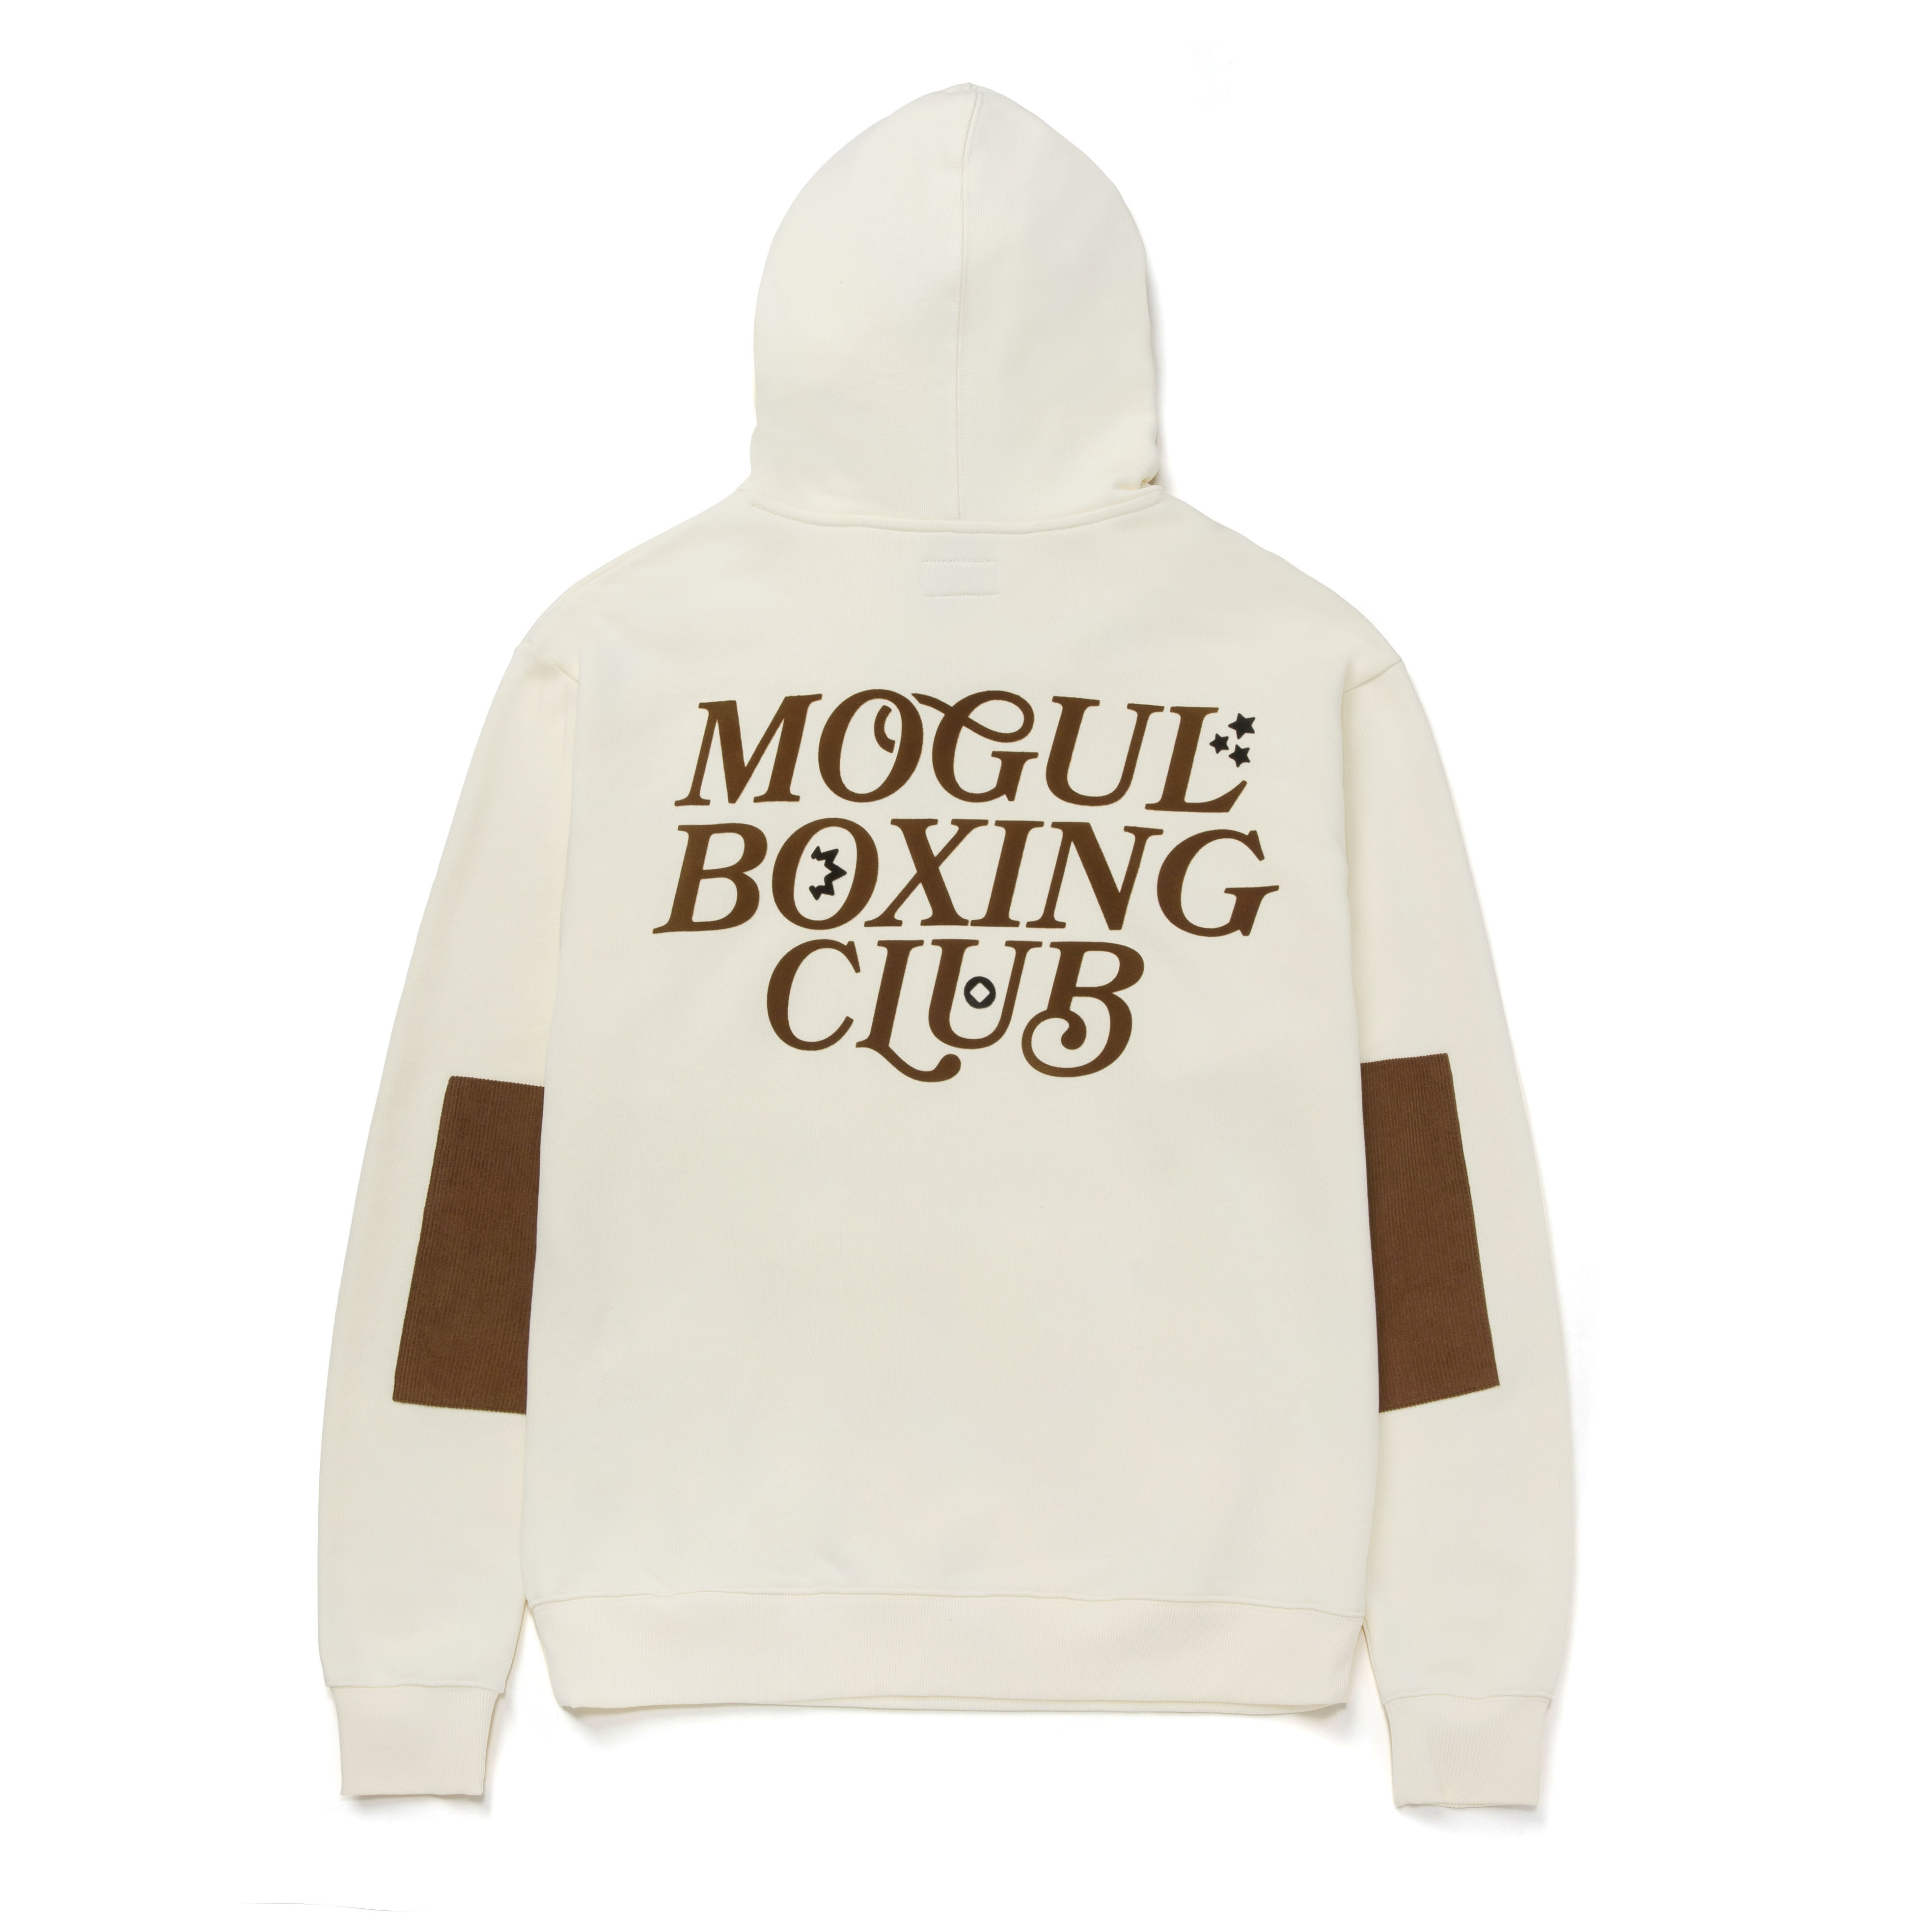 Mogul Chess Boxing Merch Mogul Chess Club T Shirt